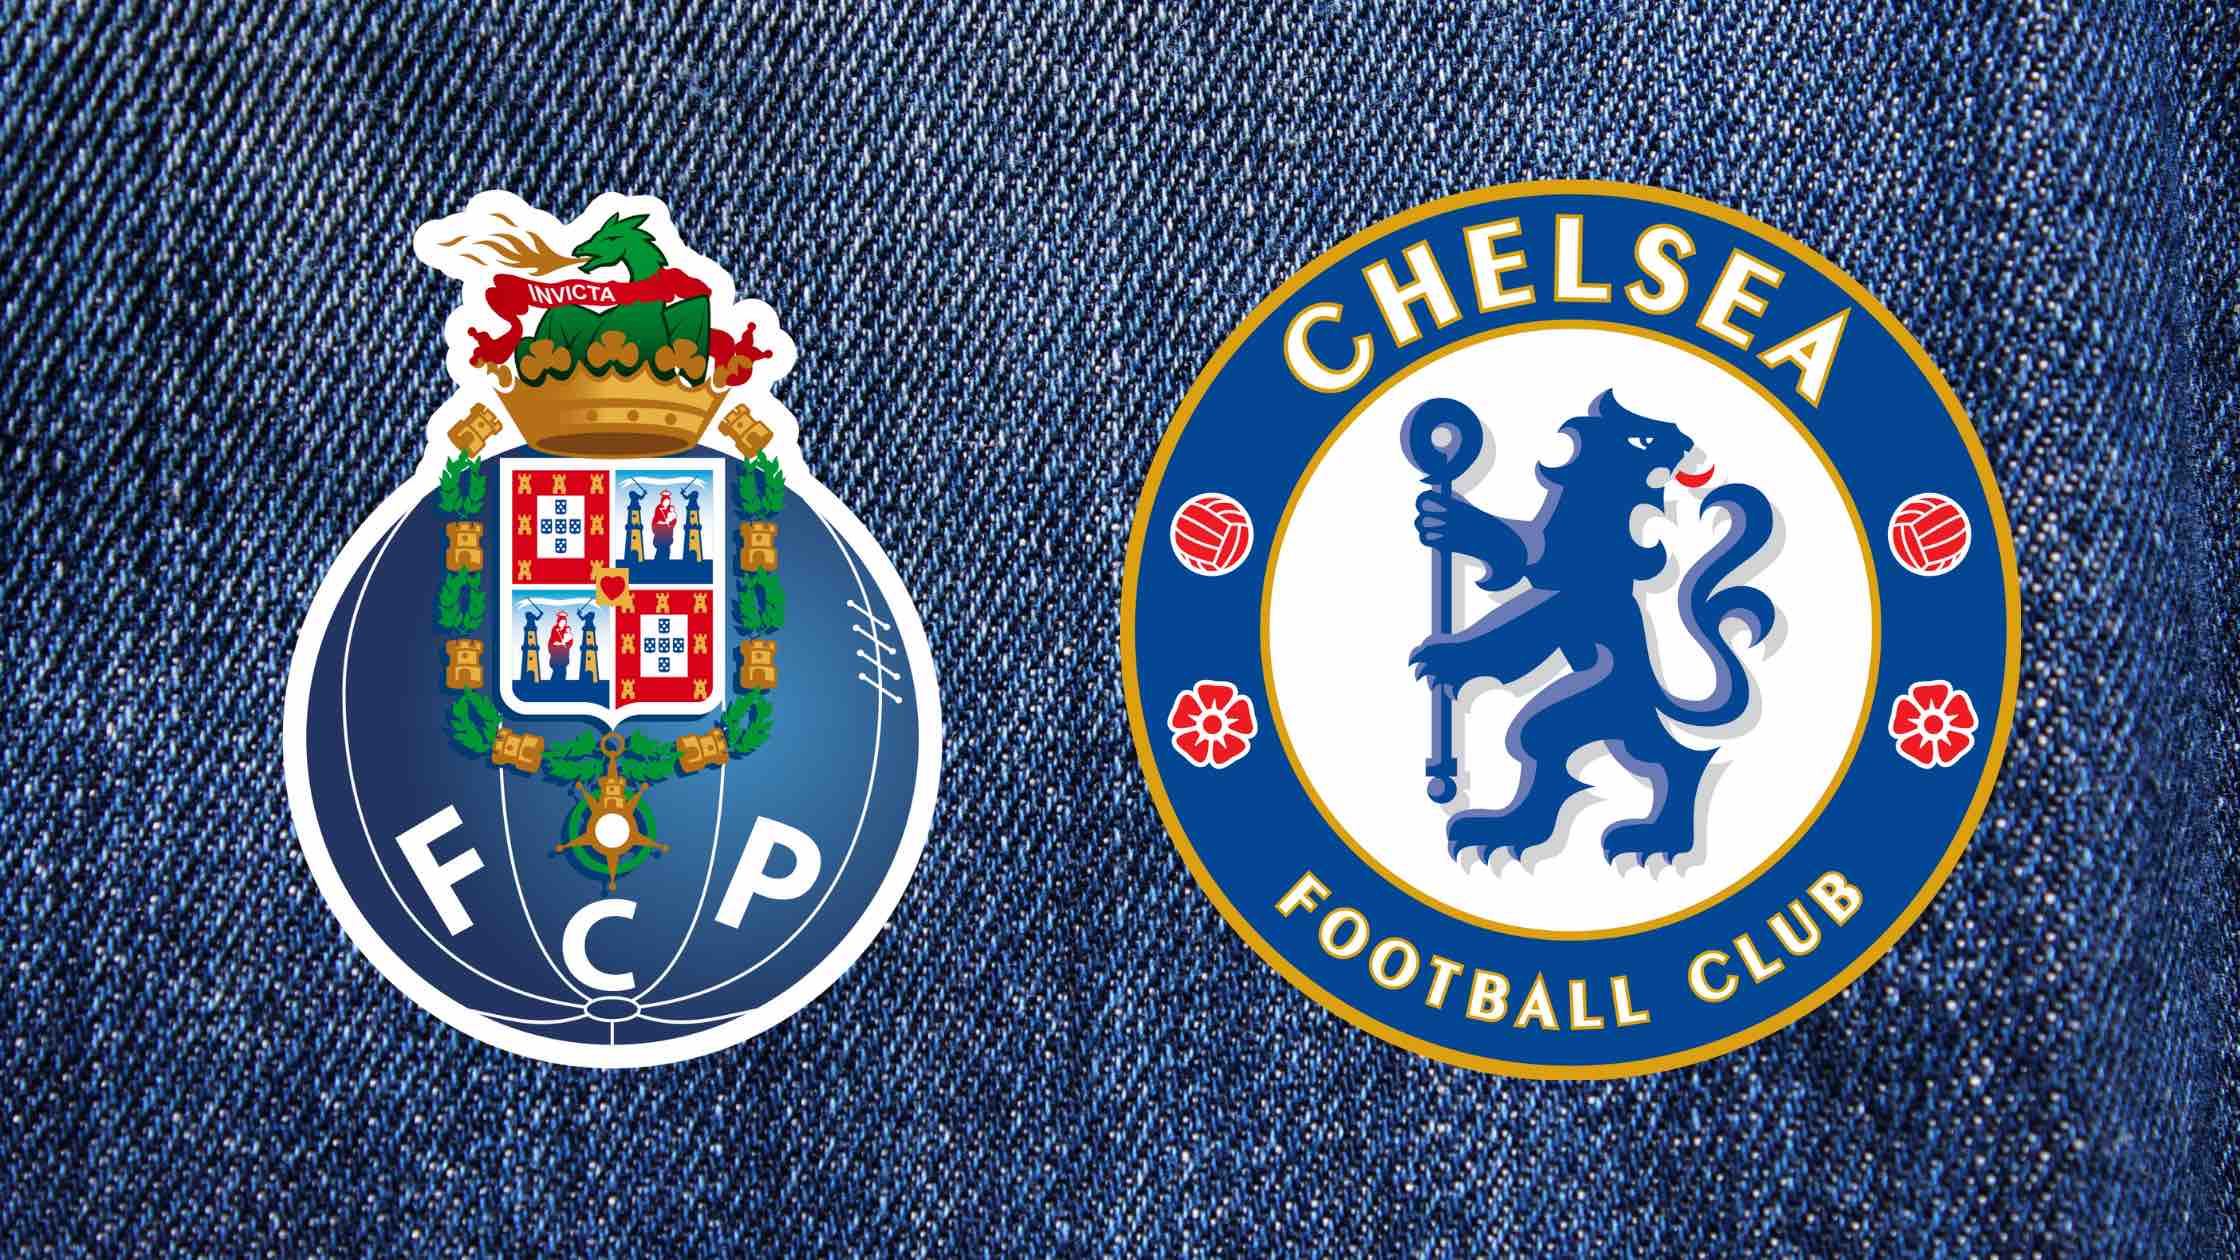 FC Porto - Chelsea FC treffen im Champions-League-Viertelfinale 2020/2021 aufeinander: live, heute Spiele, Live-Stream, Live-Ticker, TV-Übertragung, Champions-League-Achtelfinale, CL-Konferenz.